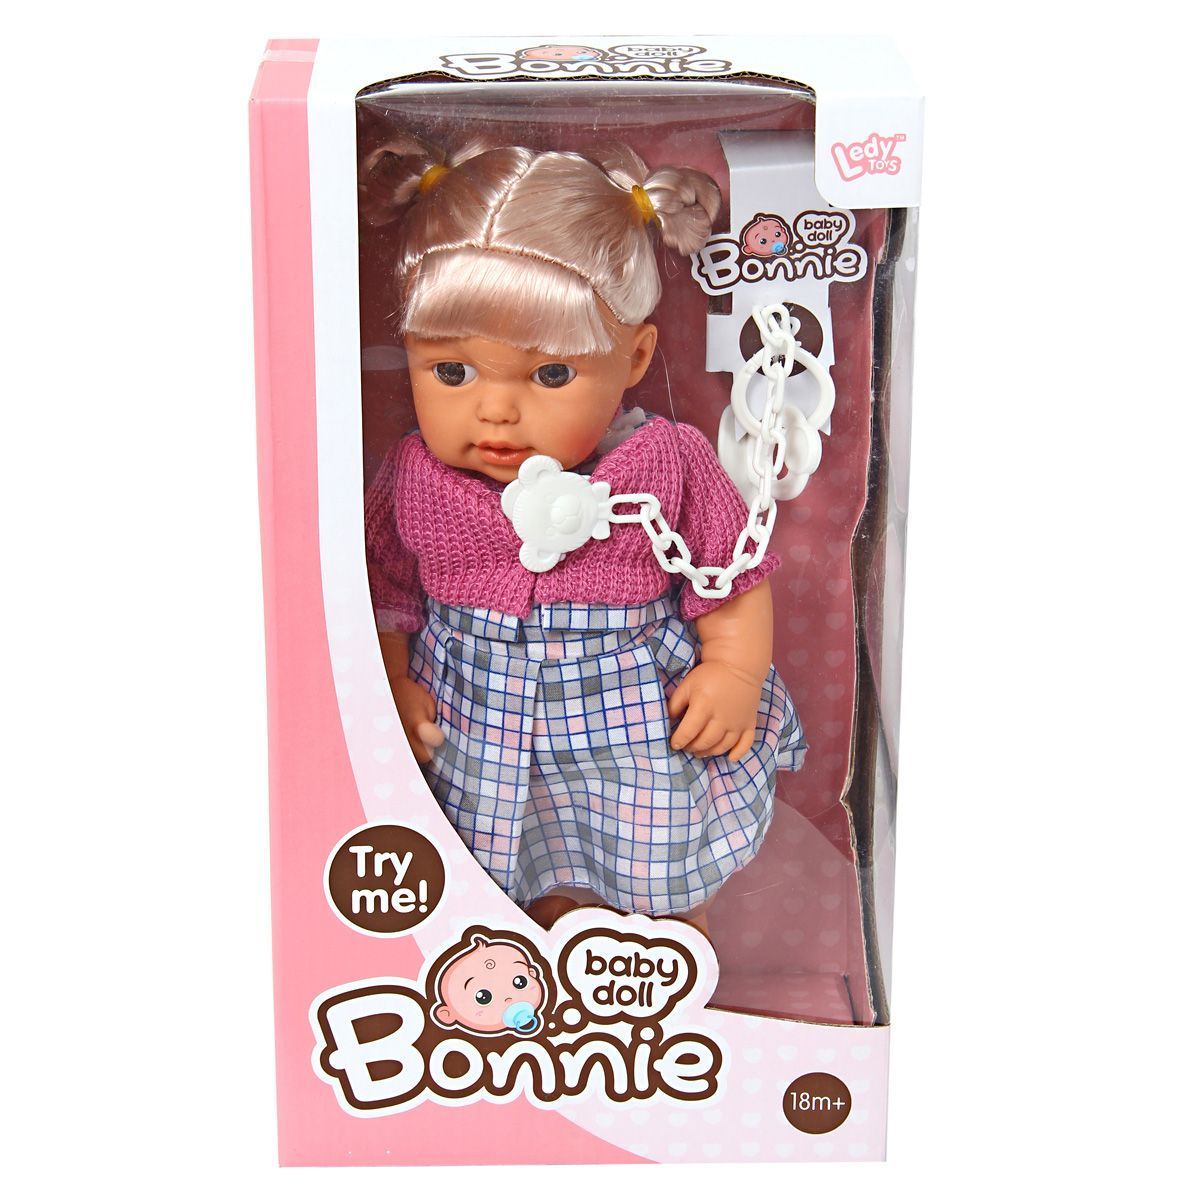 Куклы со звуком. Интерактивная кукла Shantou Gepai Bonnie 30 см 1102c1. Интерактивная кукла Shantou Gepai Ledy Toys 20 см 958548. Пупс 30см s+s Toys. Кукла плачет звук а.